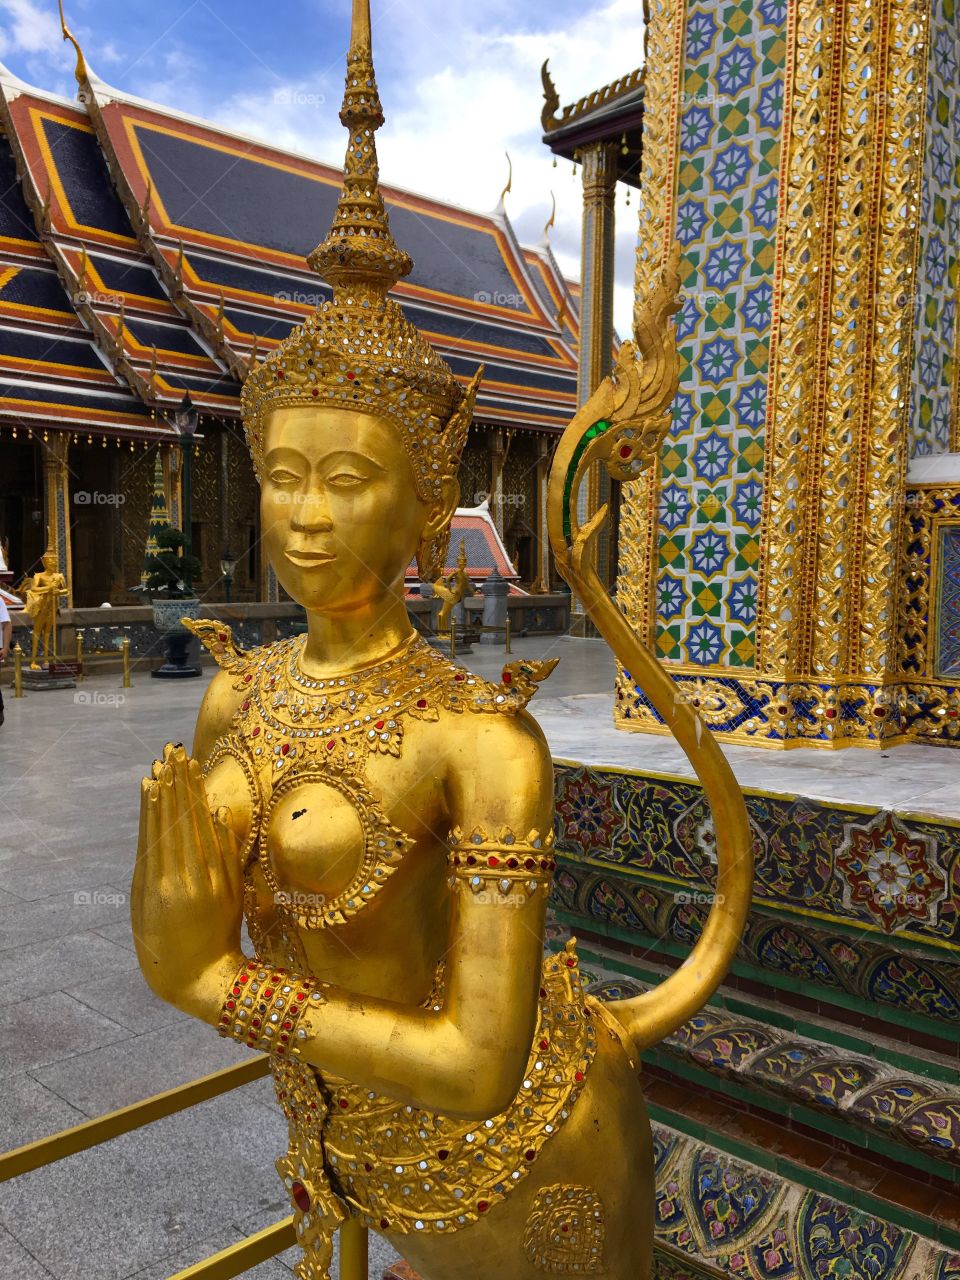 Grand Palace / Bangkok Thailand 72